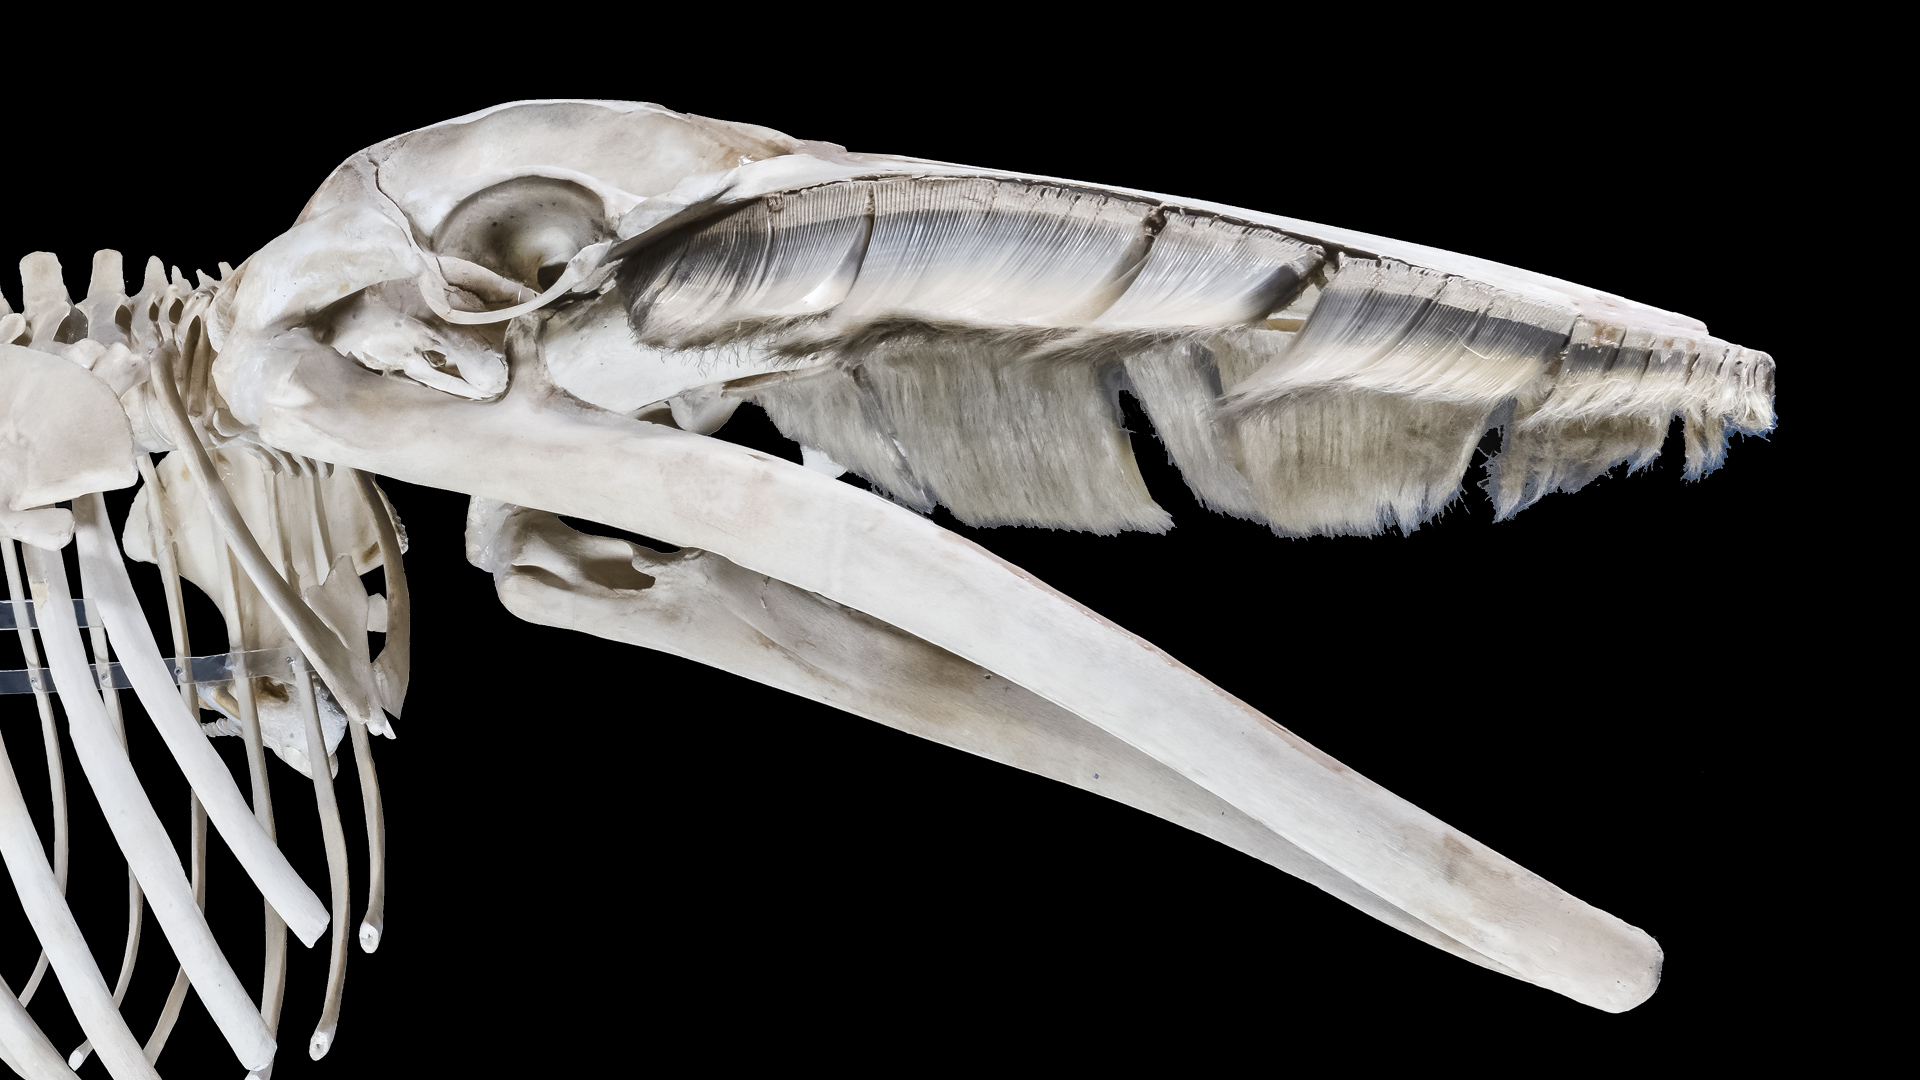 Squelette de baleine avec des fanons courts et blancs sur la mâchoire supérieure.